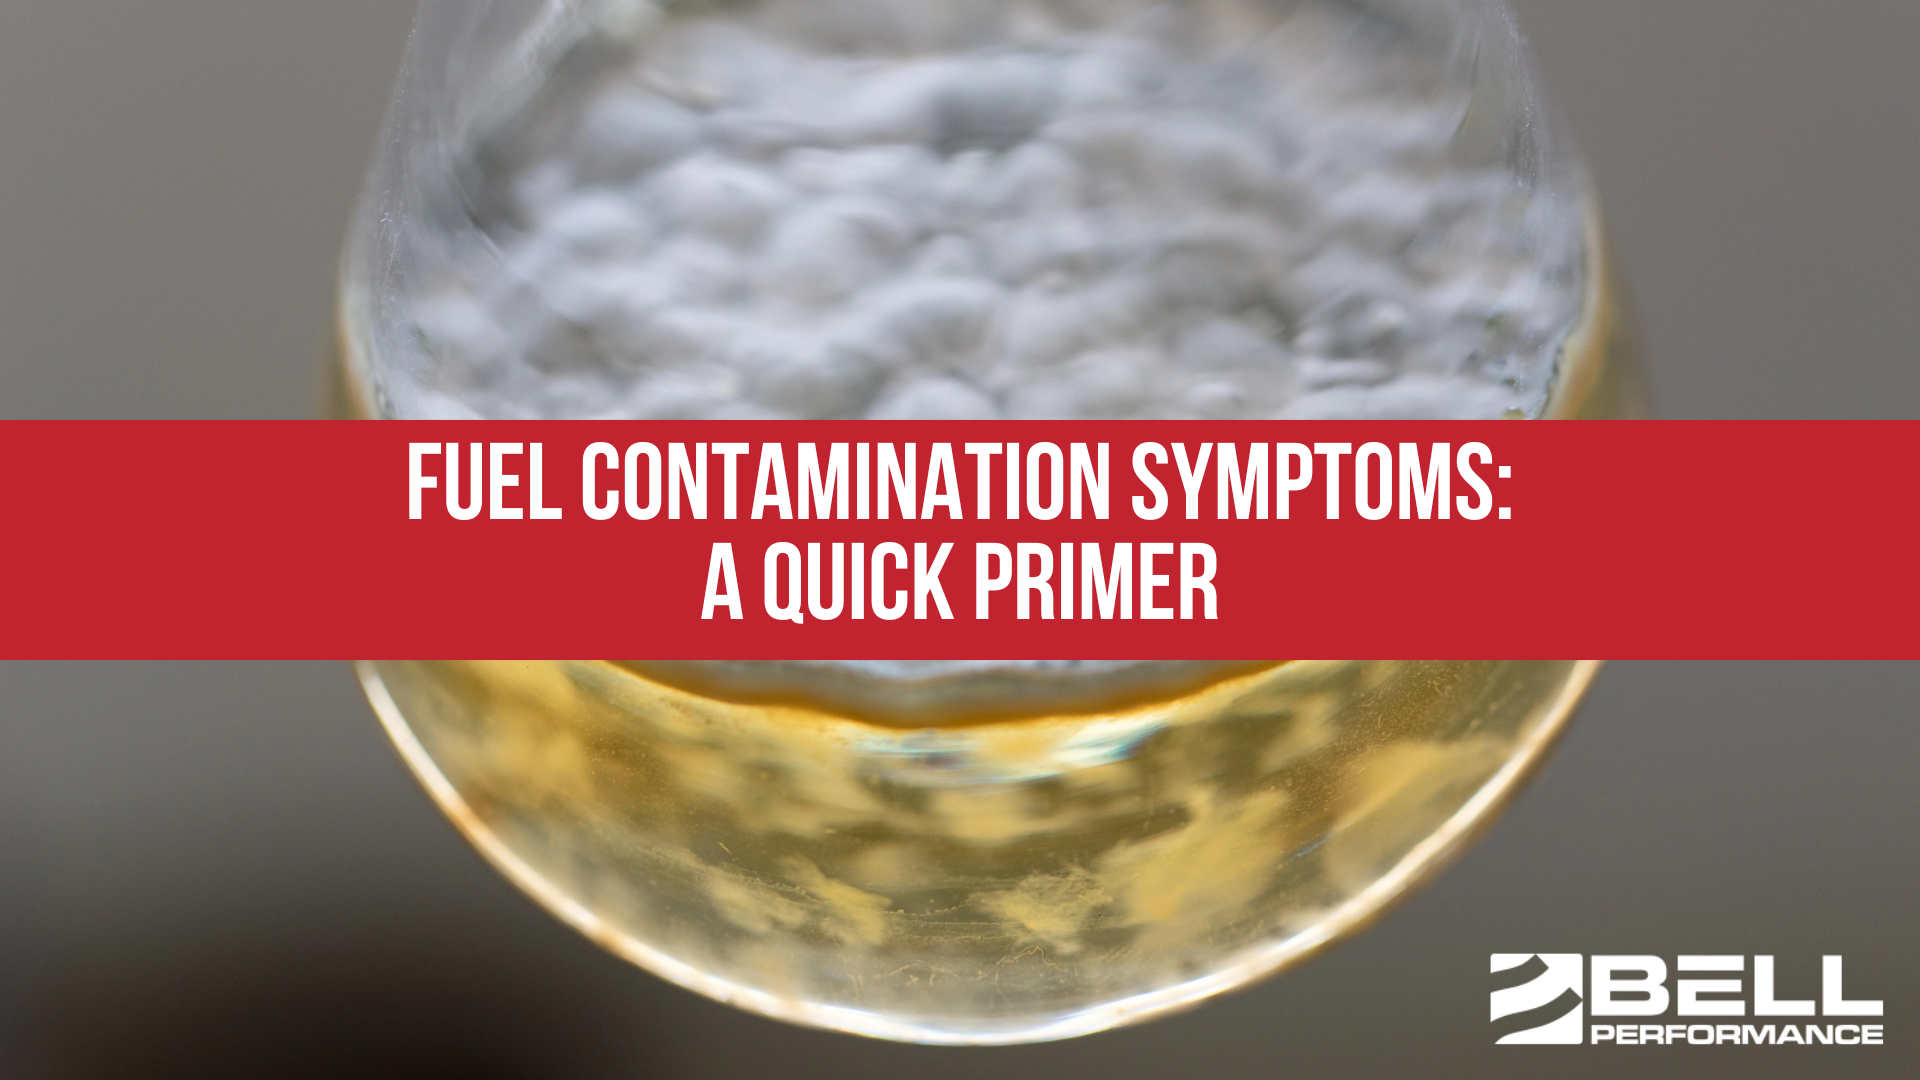 Fuel contamination symptoms: A quick primer